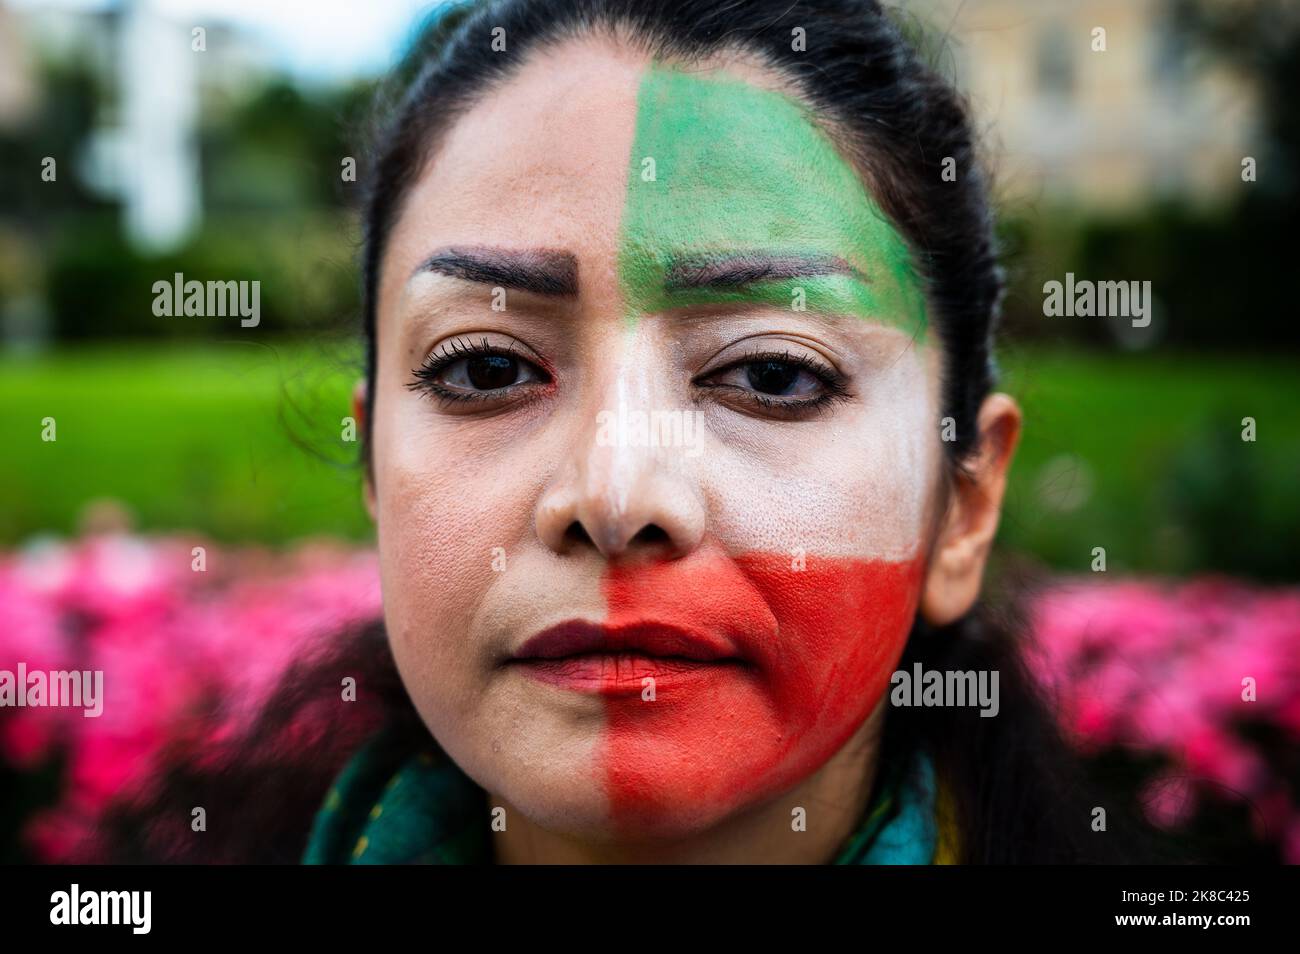 Madrid, Spagna. 22nd Ott 2022. Una donna con la bandiera dell'Iran dipinse sul suo volto in posa per un quadro durante una manifestazione che chiedeva la libertà in Iran e contro la morte della donna iraniana Mahsa Amini. Mahsa Amini, 22 anni, è stato arrestato il 13 settembre nella capitale Teheran per aver vestito in modo improprio indossando un velo mal riposto. Morì tre giorni dopo in una stazione di polizia dove era detenuta. Credit: Marcos del Mazo/Alamy Live News Foto Stock